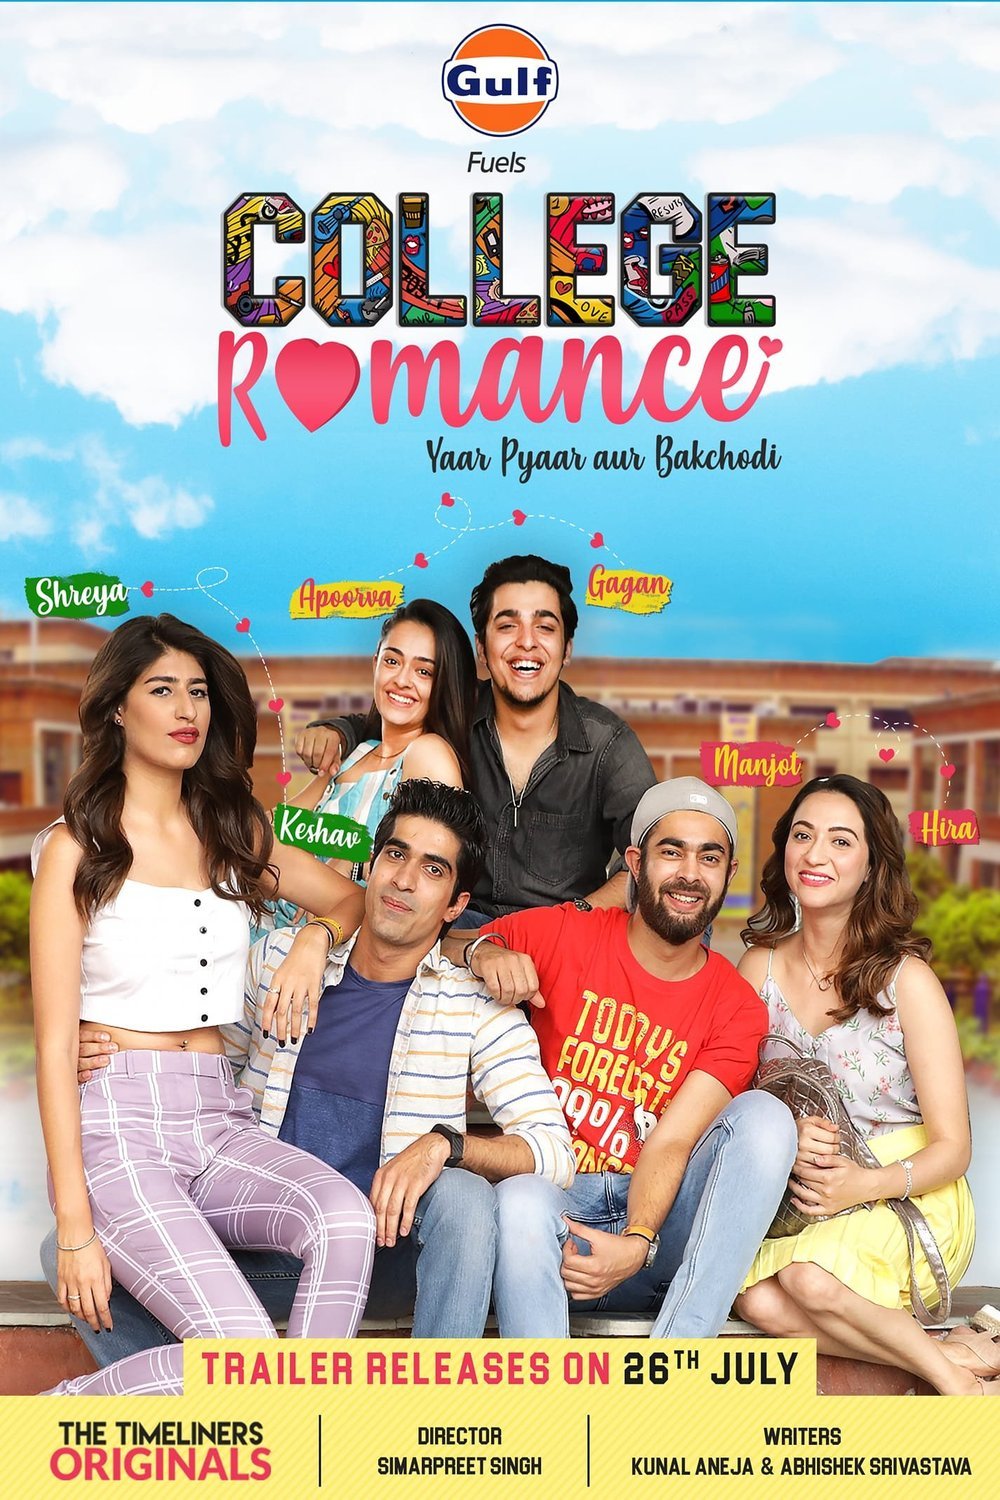 L'affiche originale du film College Romance en Hindi